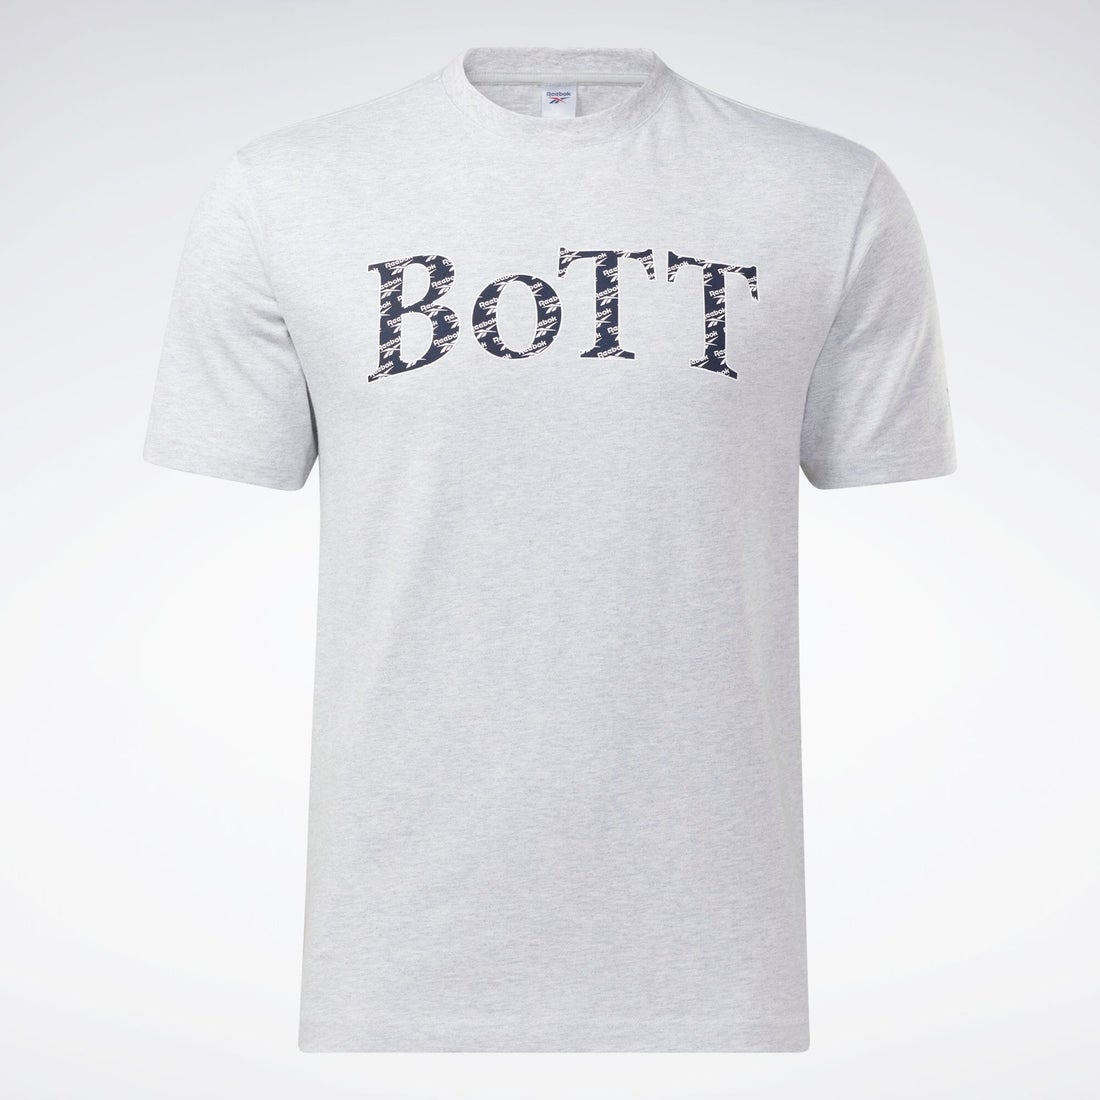 リーボック×ボット Tシャツ / RBK×BoTT S/S Tee（ライトグレイヘザー）